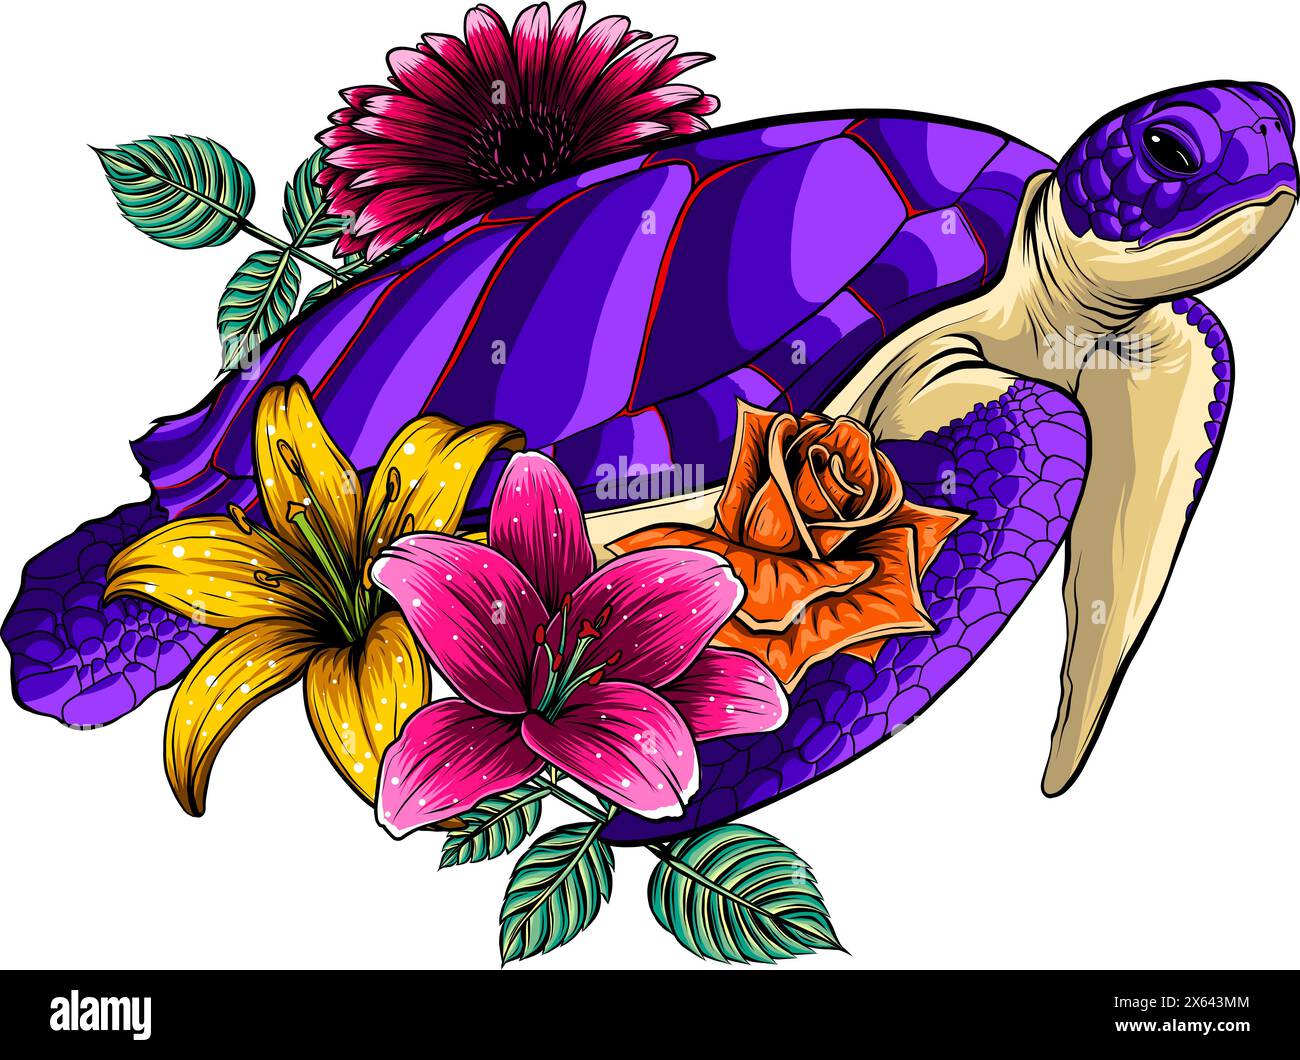 Illustrazione vettoriale di tartaruga marina con fiore su sfondo bianco Illustrazione Vettoriale